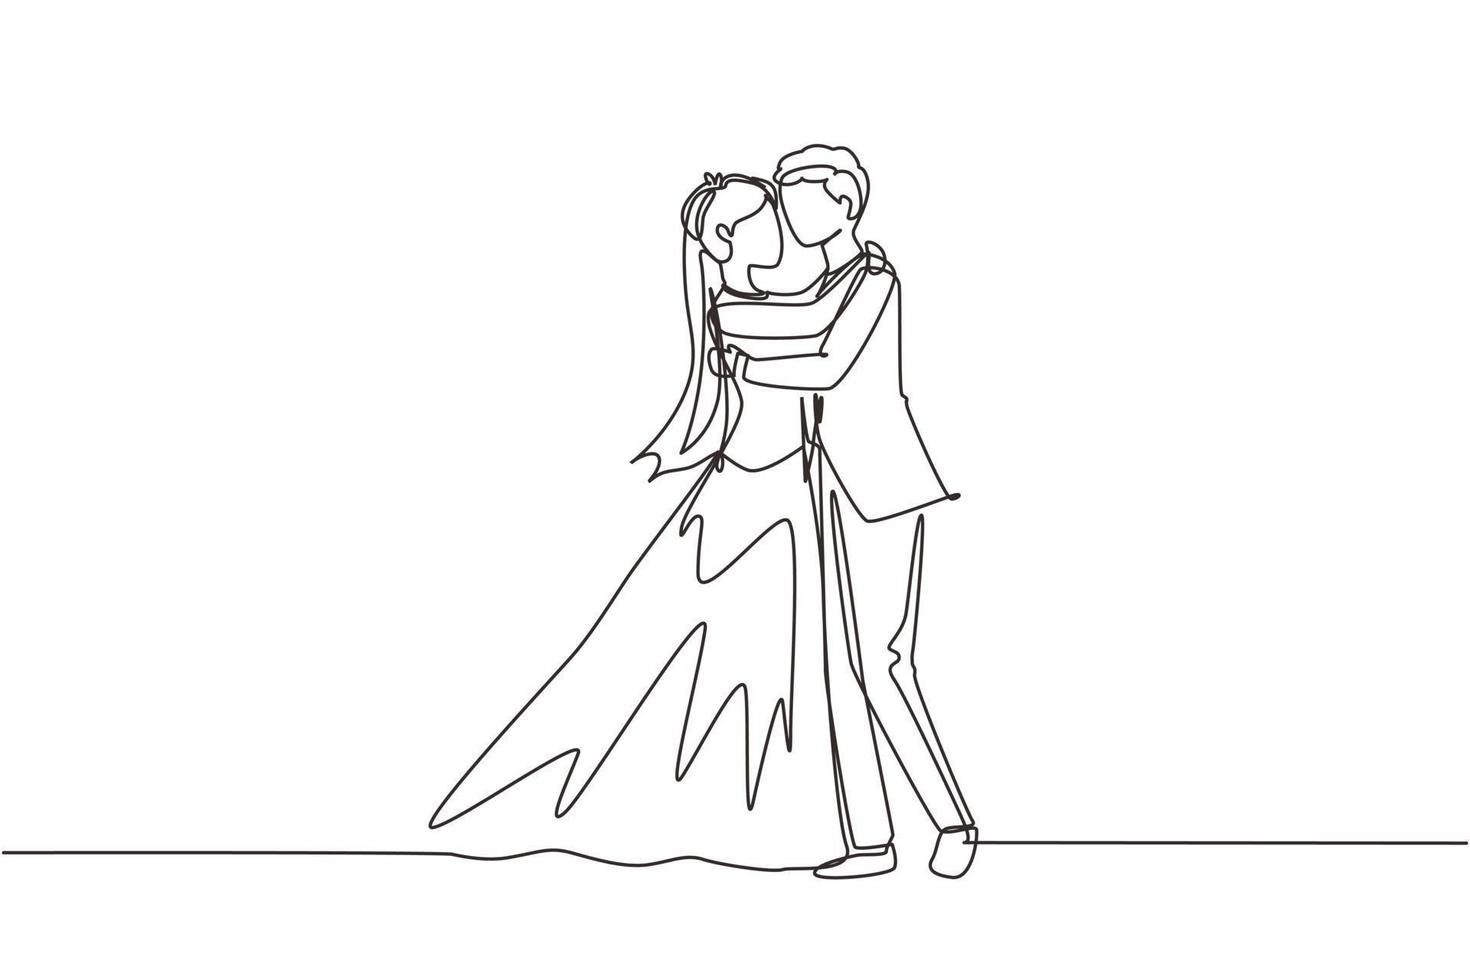 única linha contínua lindo casal em pose romântica. homem feliz abraçando sua mulher parceira com vestido de noiva. intimidade celebra festa de casamento. uma linha desenhar ilustração em vetor design gráfico